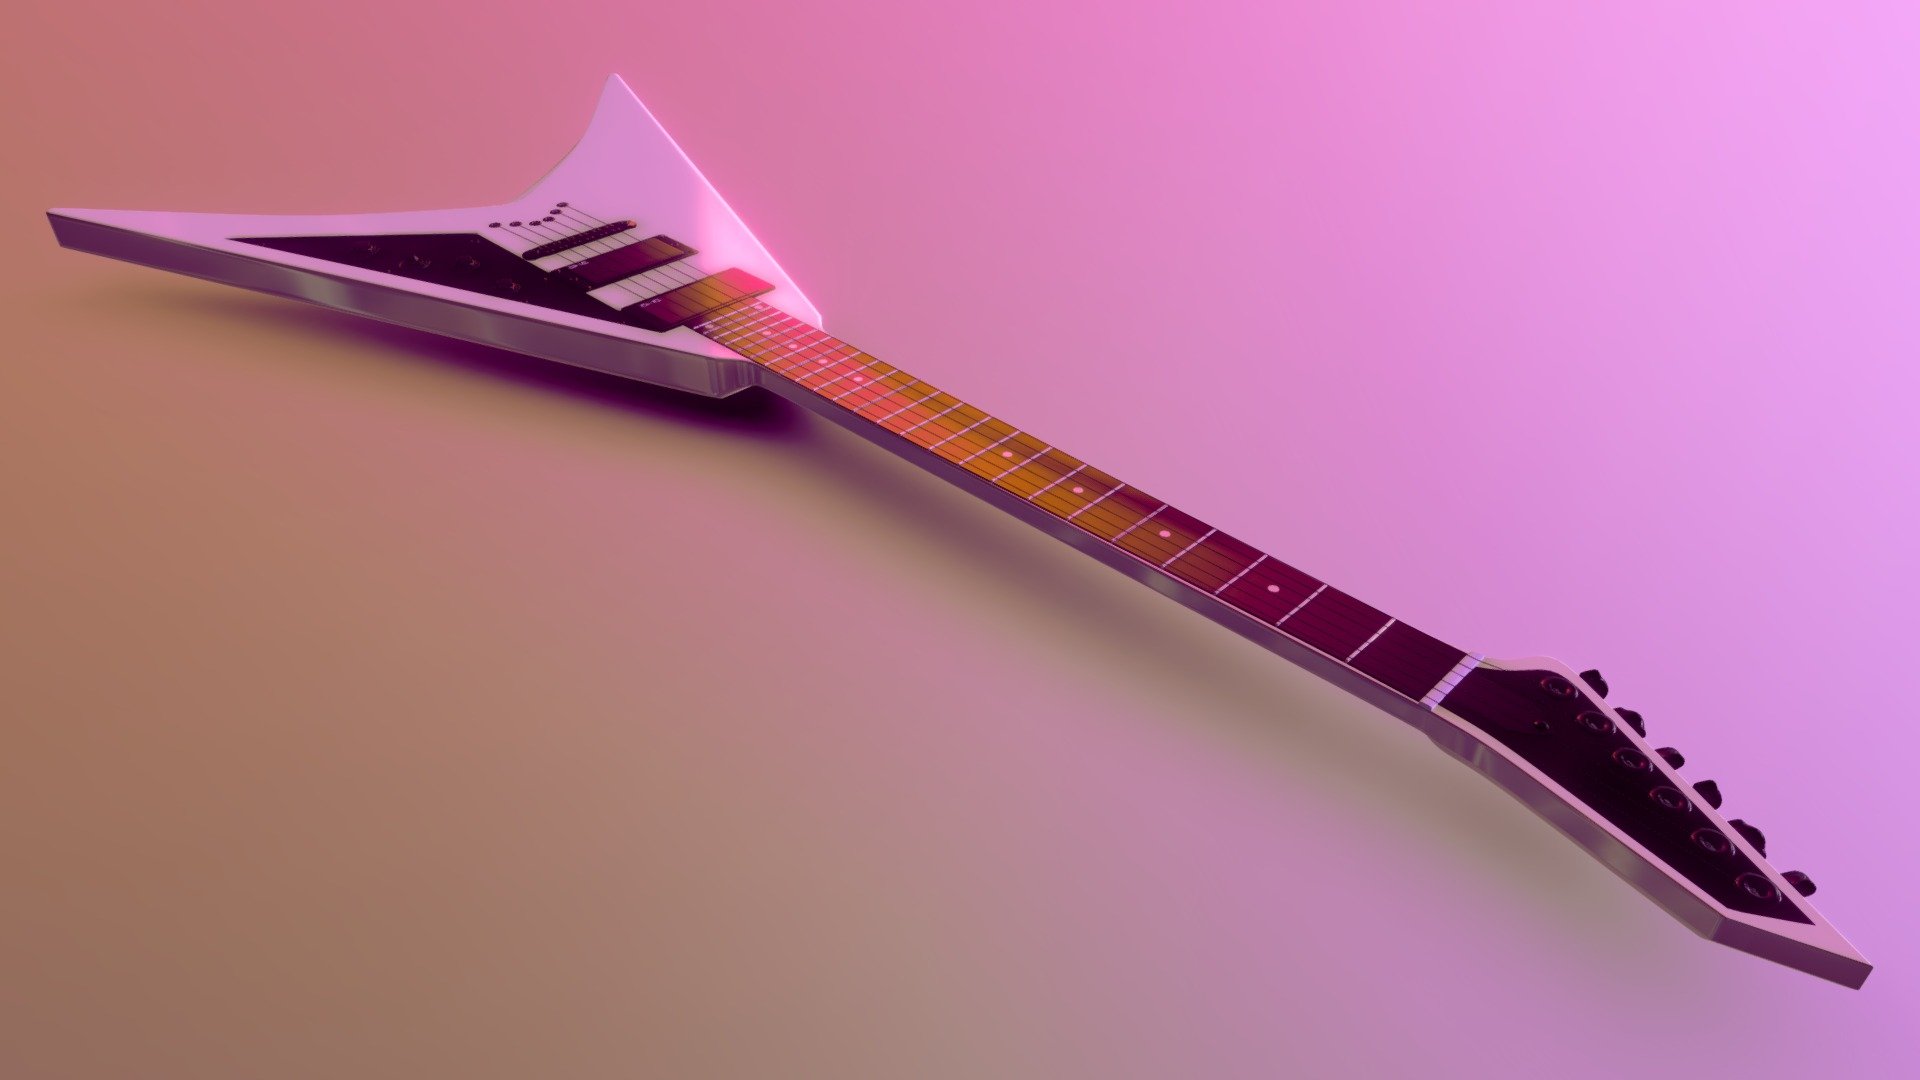 Electro Guitar